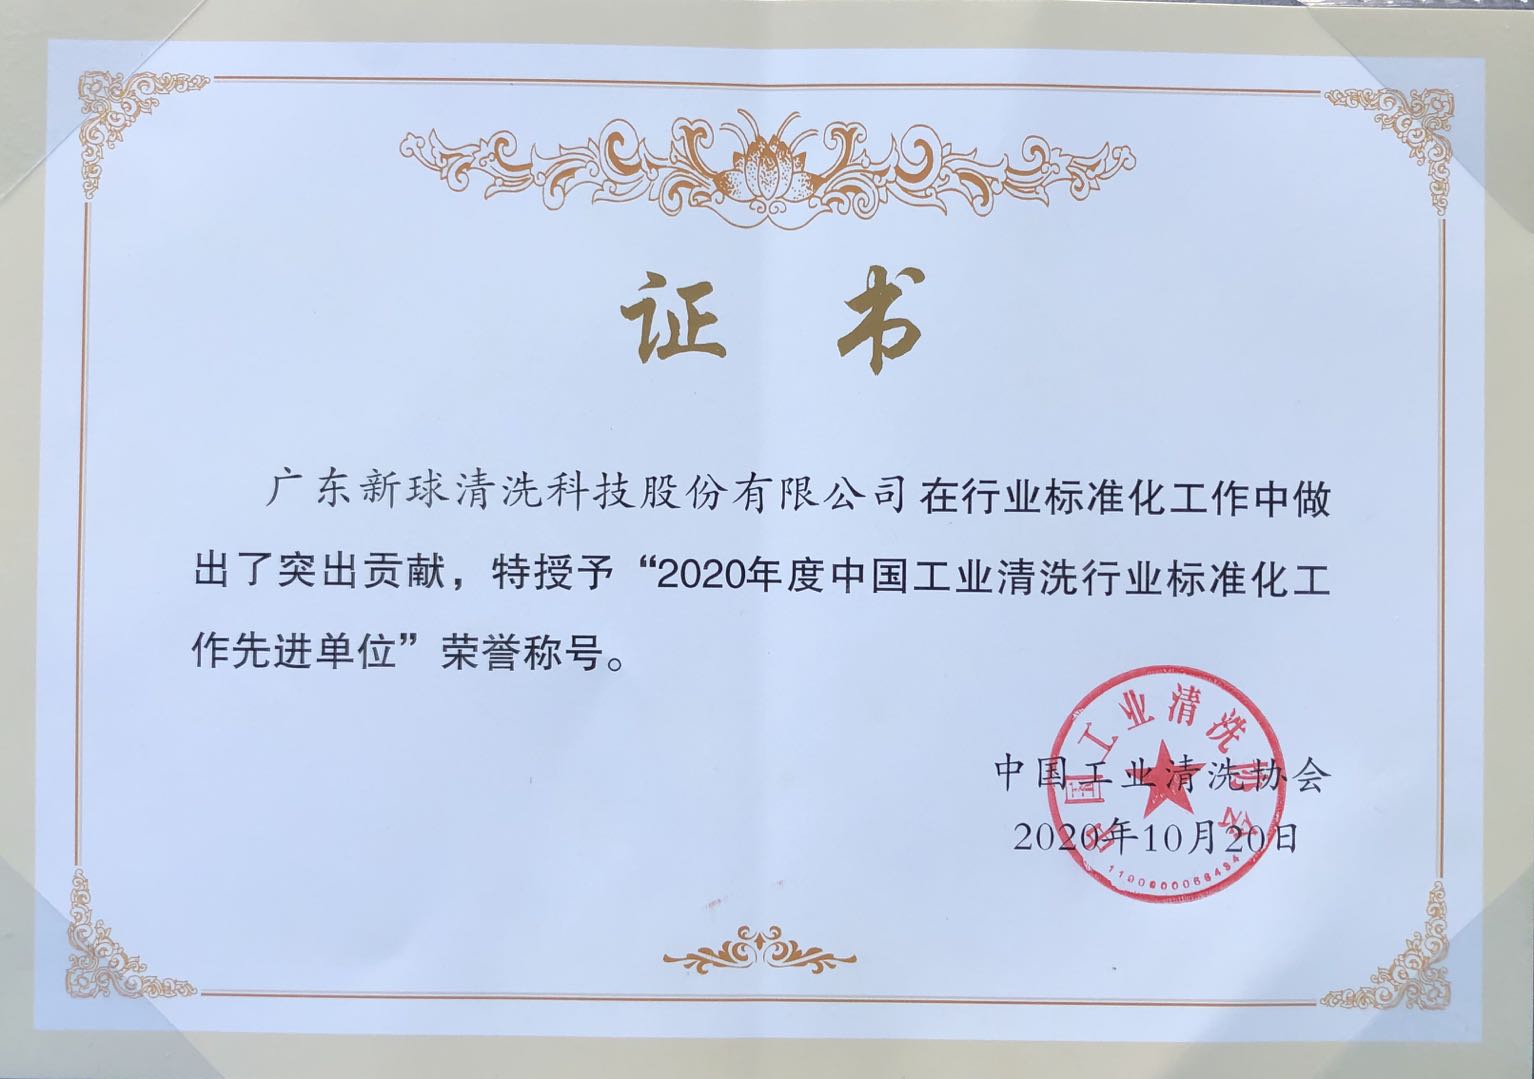 金沙娱场城61665荣获“2020年度中国工业清洗行业标准化工作先进单位”荣誉称号